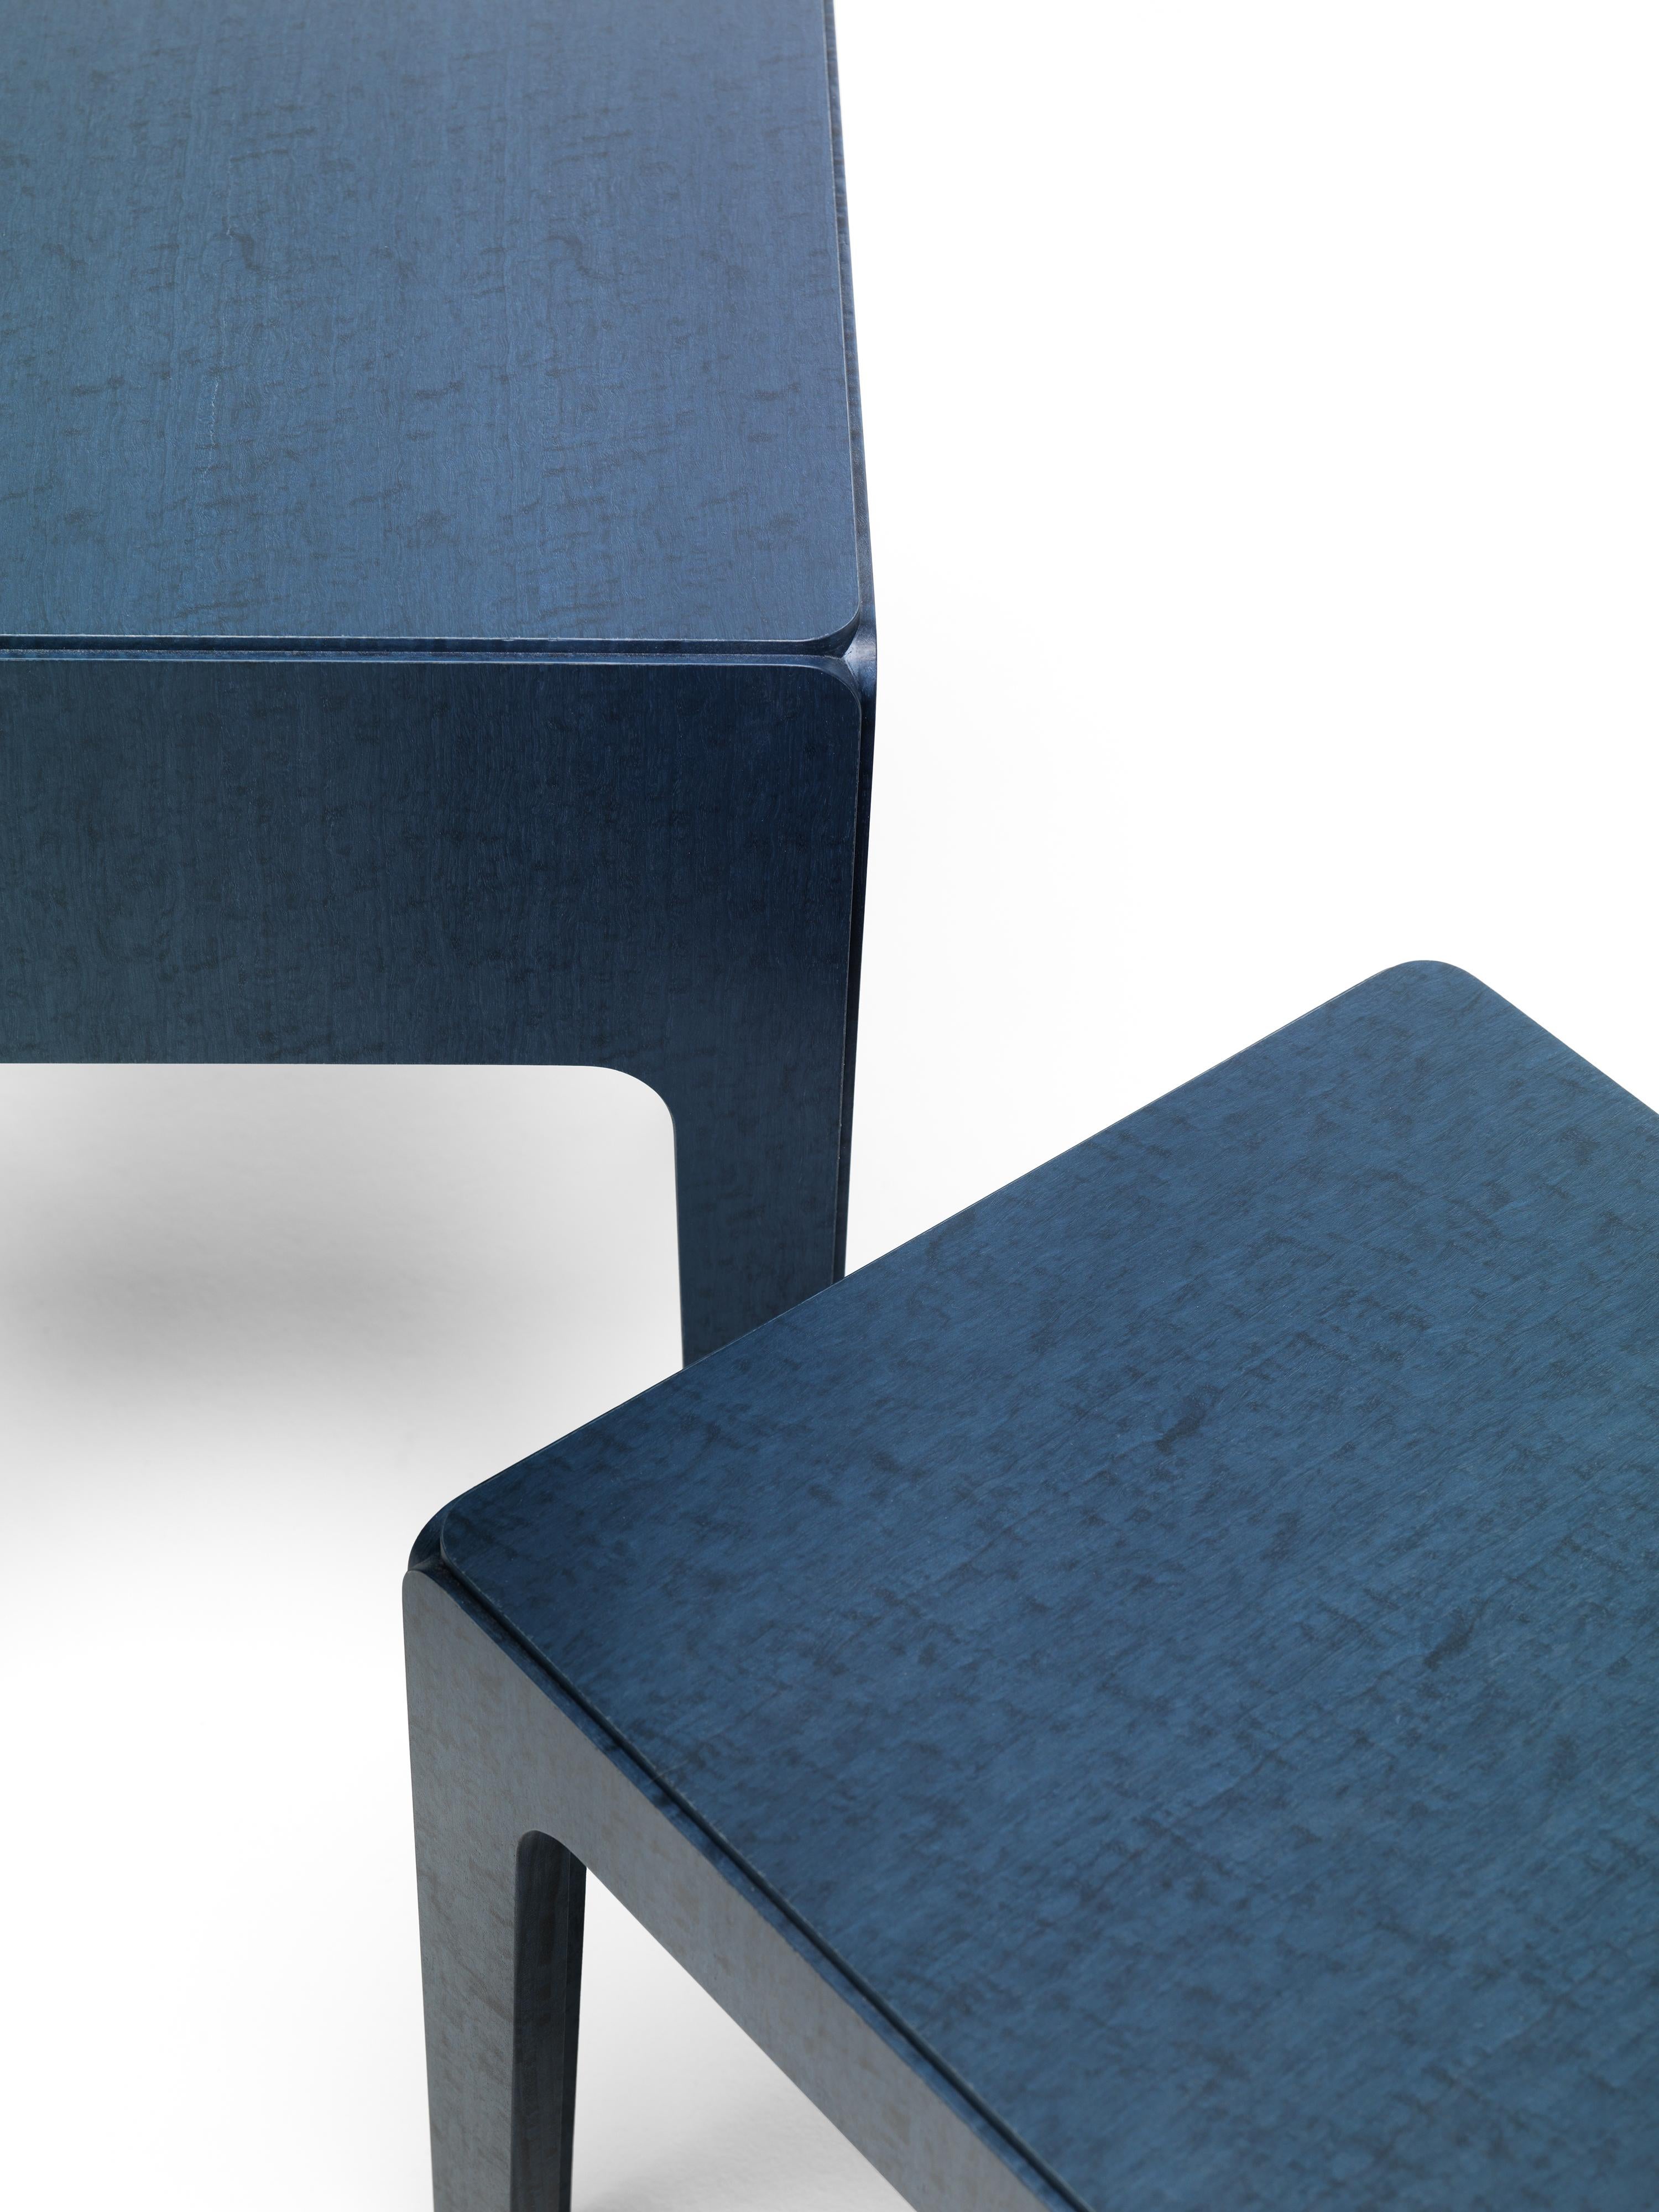 Eine Familie von Tischen mit 4 Beinen aus MDF, die mit blau gebeiztem Eukalyptusfurnier verkleidet sind. Durch einen einfachen Trick erscheint der Tisch, der in Wirklichkeit aus fünf Teilen besteht, wie aus einem massiven Block gemeißelt. Die vier